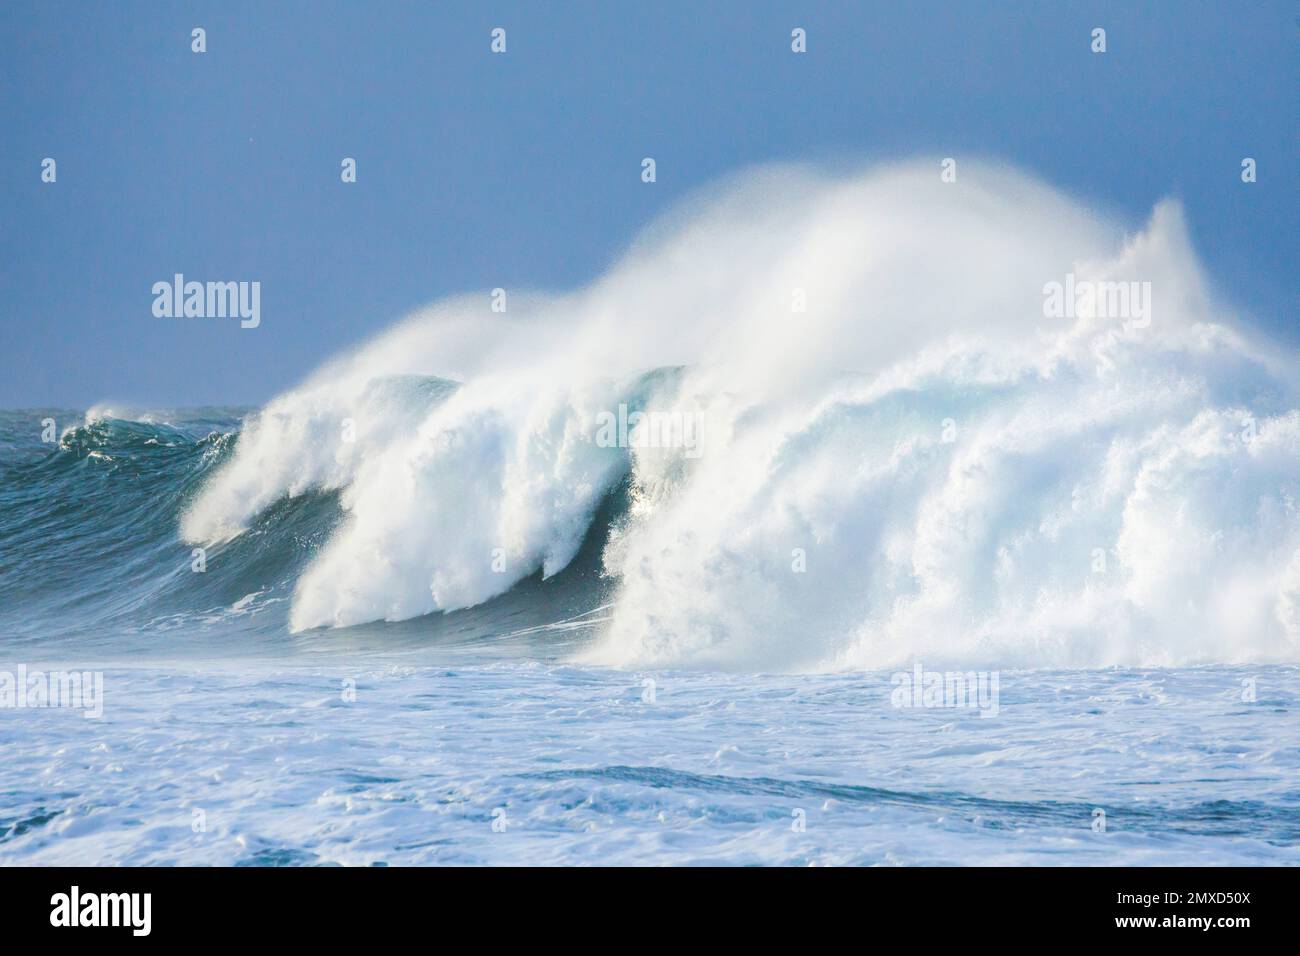 Große Welle, die auf dem offenen Meer vor der Südküste Englands, Großbritanniens, Englands, der Grafschaft Dorset, West Lulworth aufbrach Stockfoto